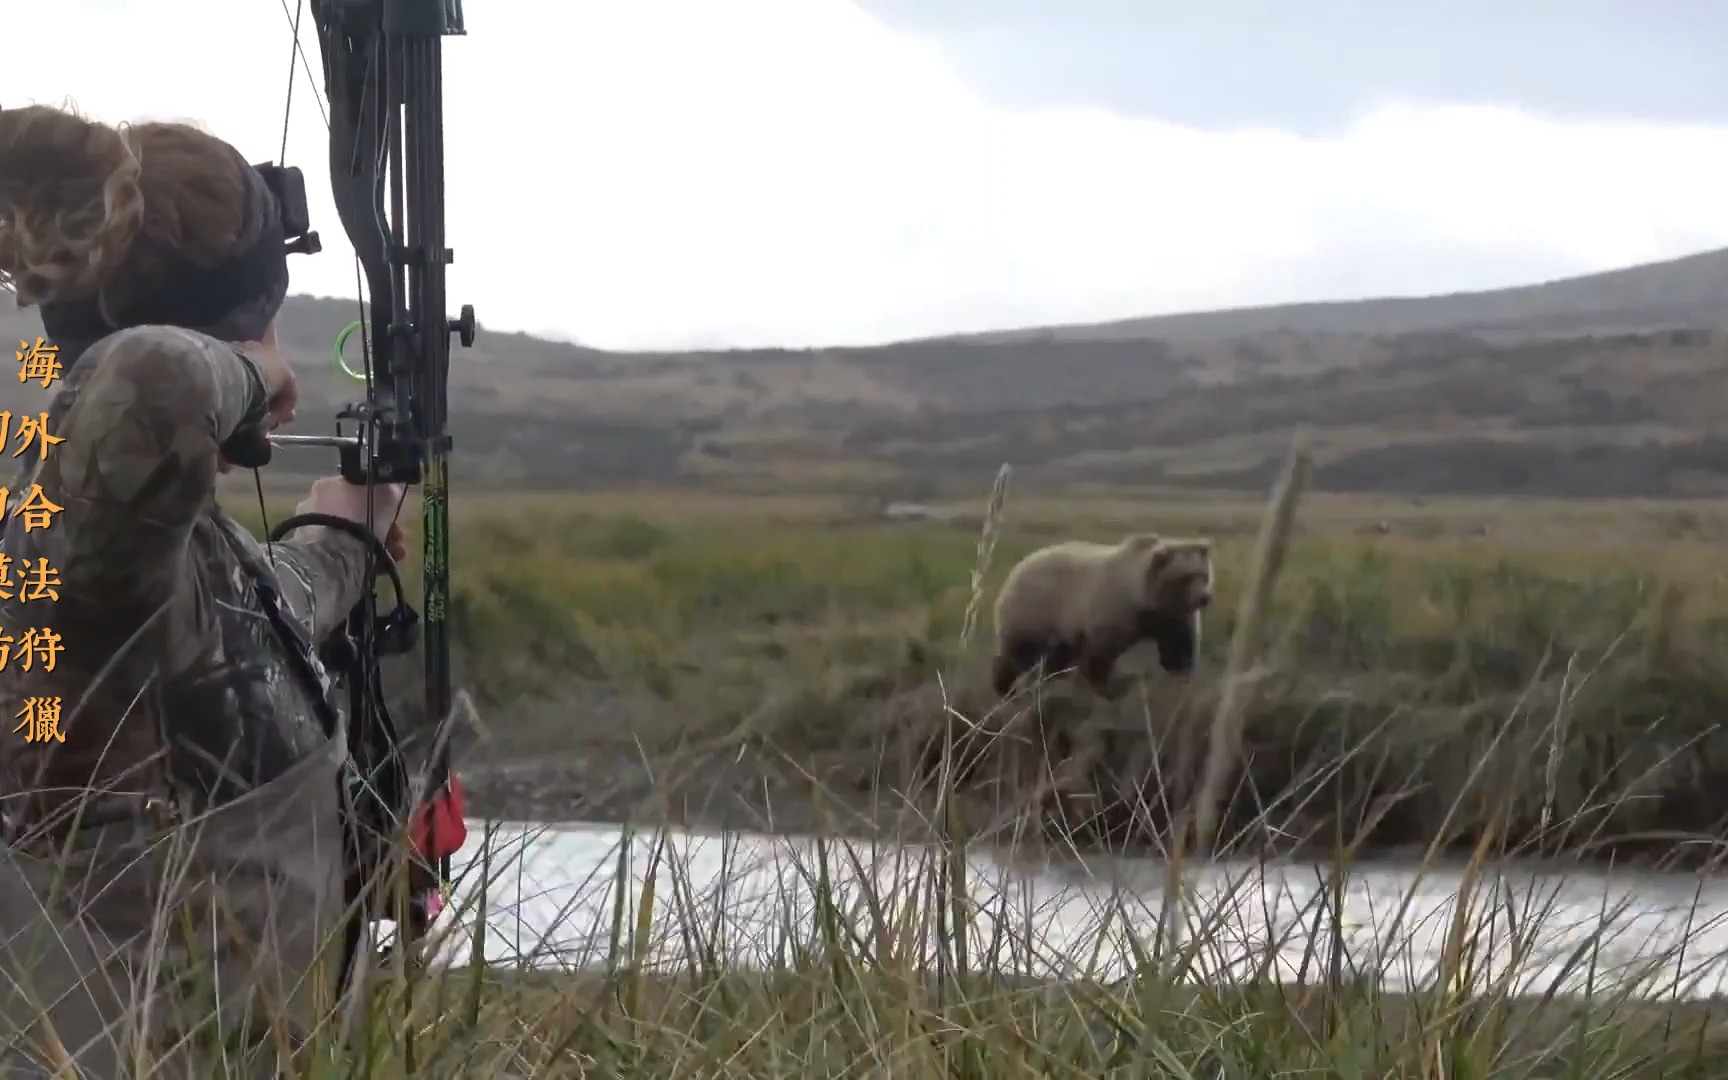 女猎手用复合弓近距离狩猎棕熊,双方距离不足13米